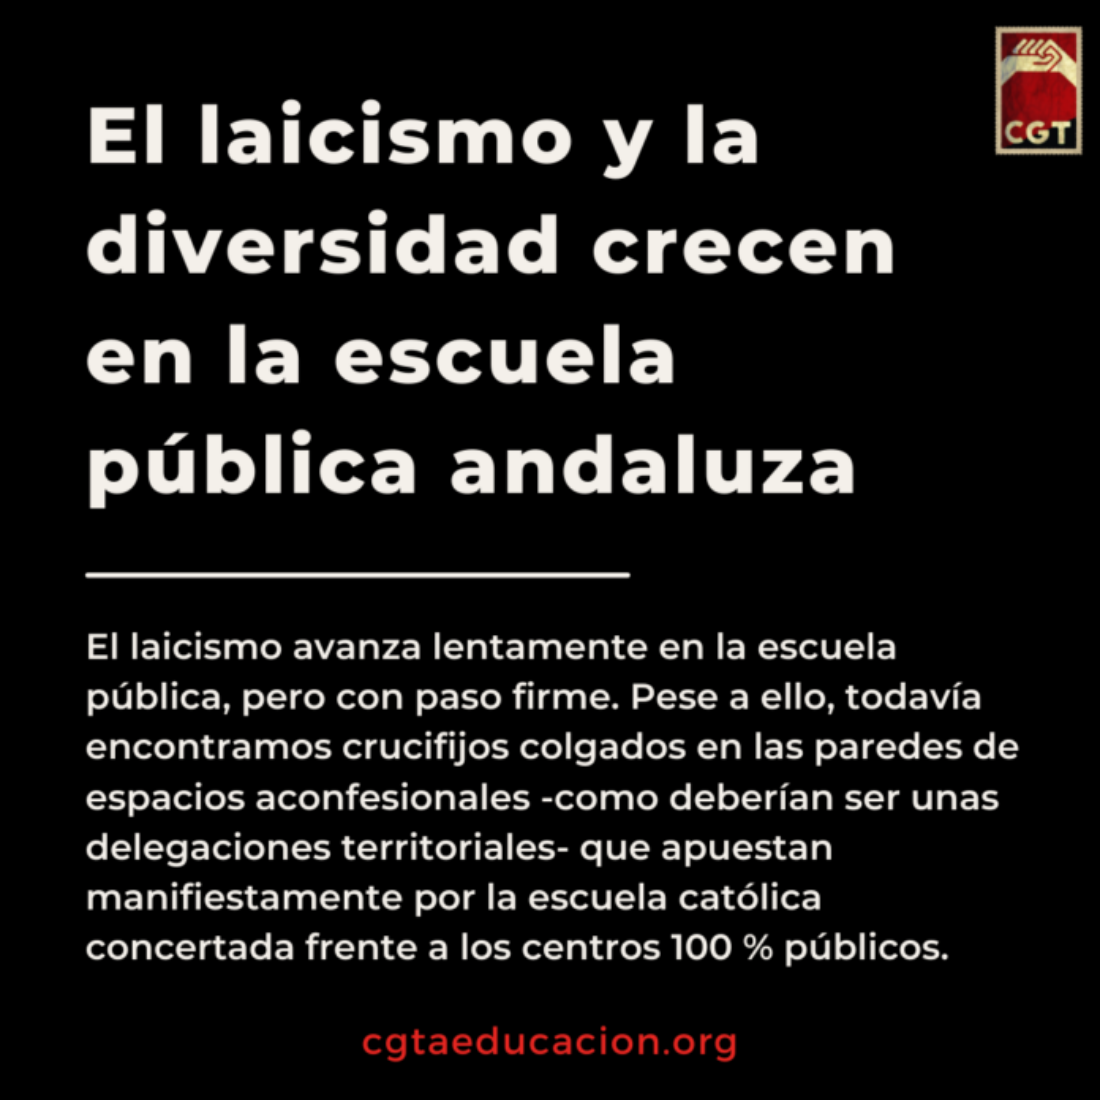 El laicismo y la diversidad crecen en la escuela pública andaluza